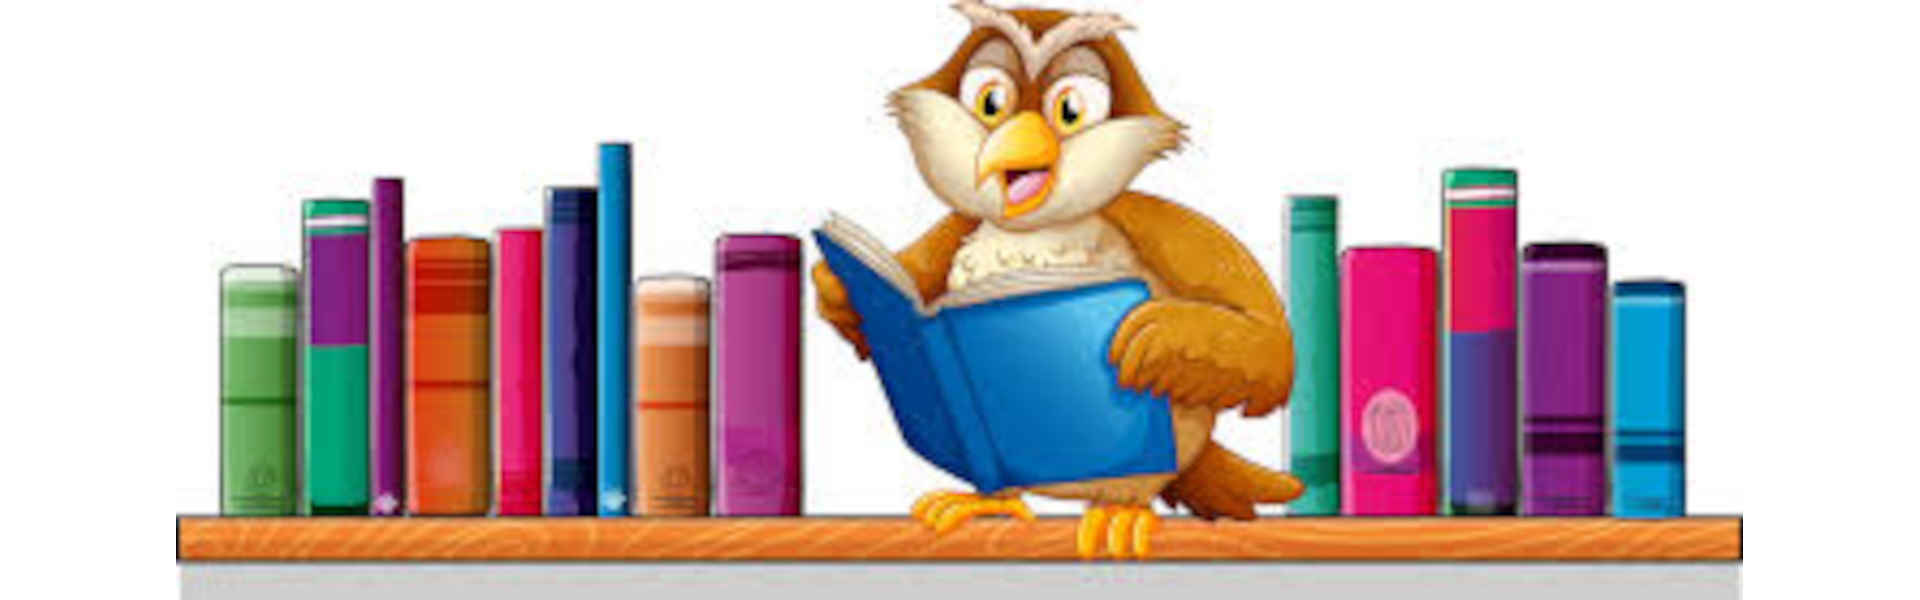 Rysunek sowy z książkami